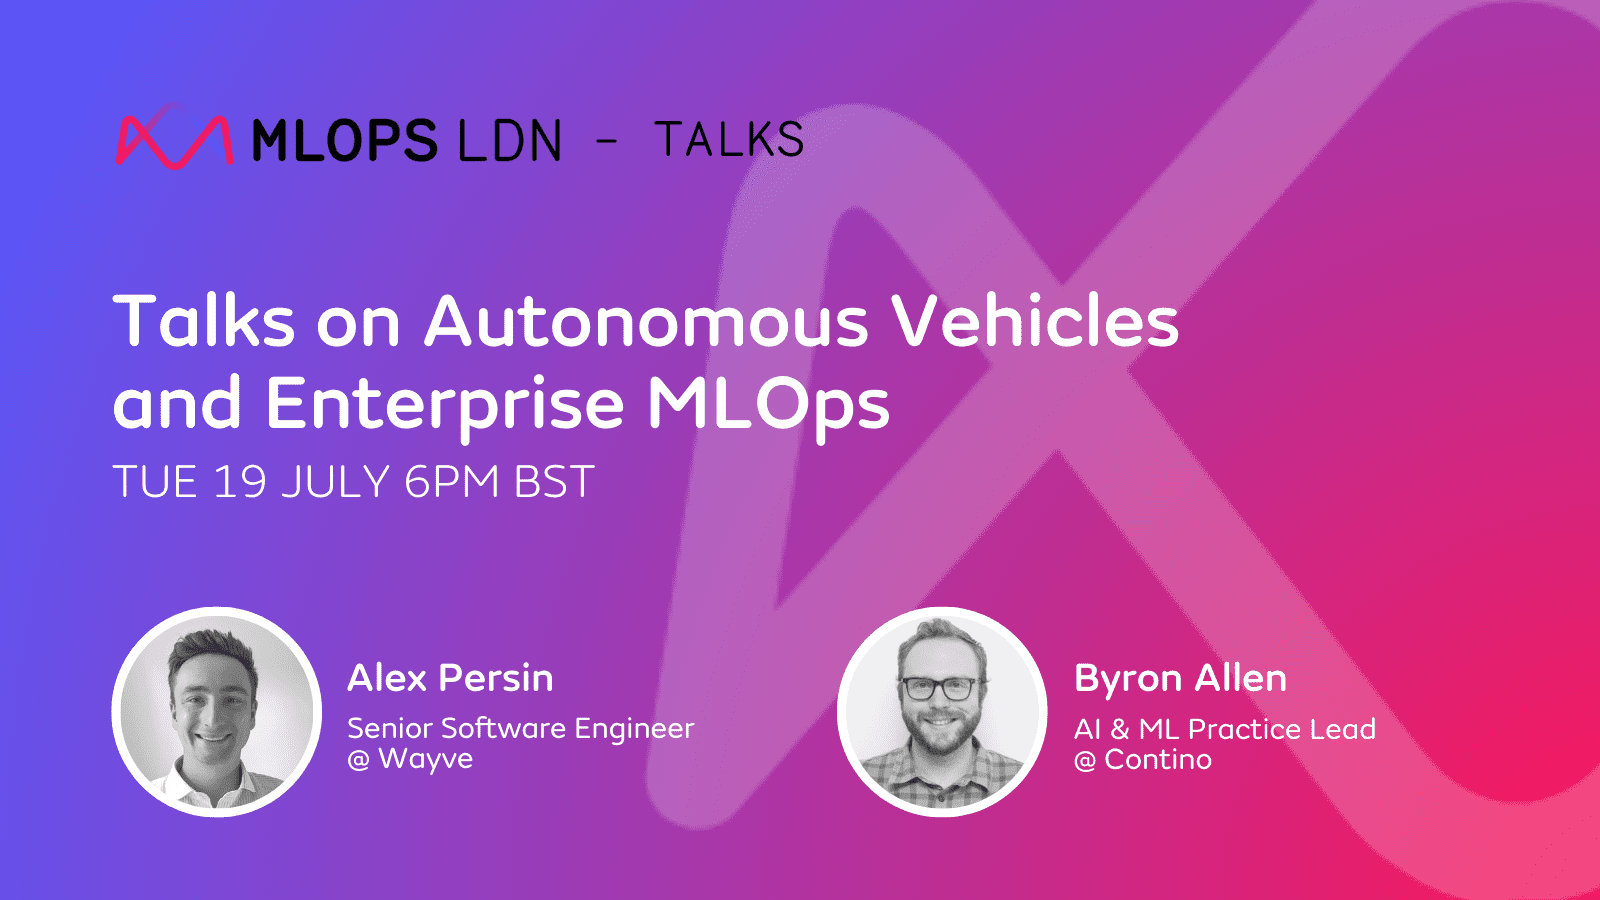 MLOps London July: Talks on Autonomous Vehicles and Enterprise MLOps